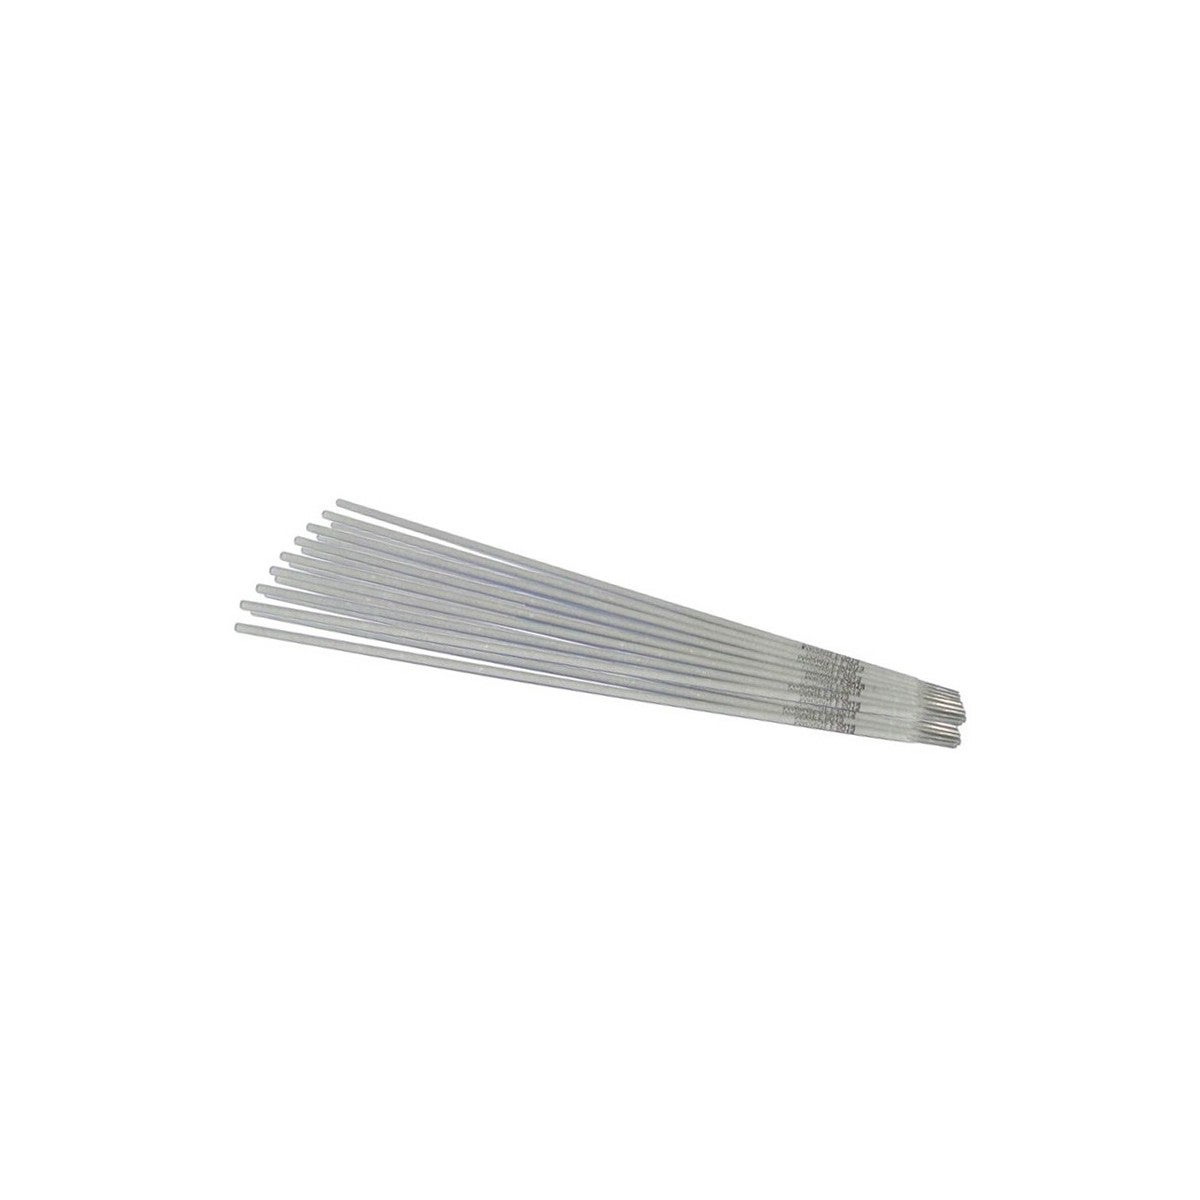 Des électrodes de soudage 1.6mm/2.0mm baguette de soudage en aluminium basse  température facile